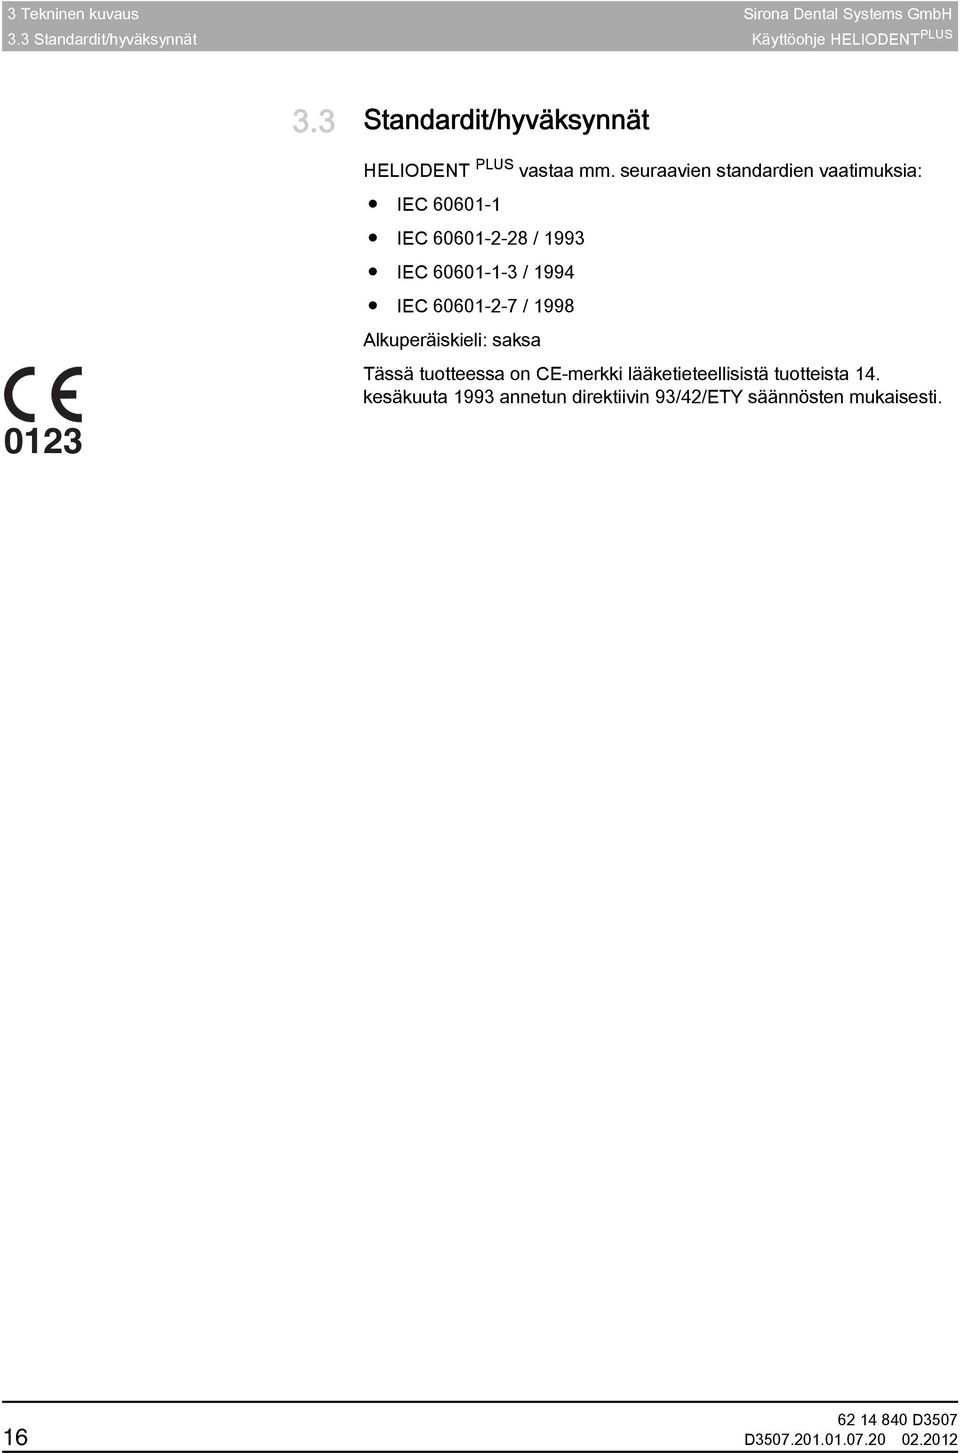 seuraavien standardien vaatimuksia: IEC 60601-1 IEC 60601-2-28 / 1993 IEC 60601-1-3 / 1994 IEC 60601-2-7 / 1998